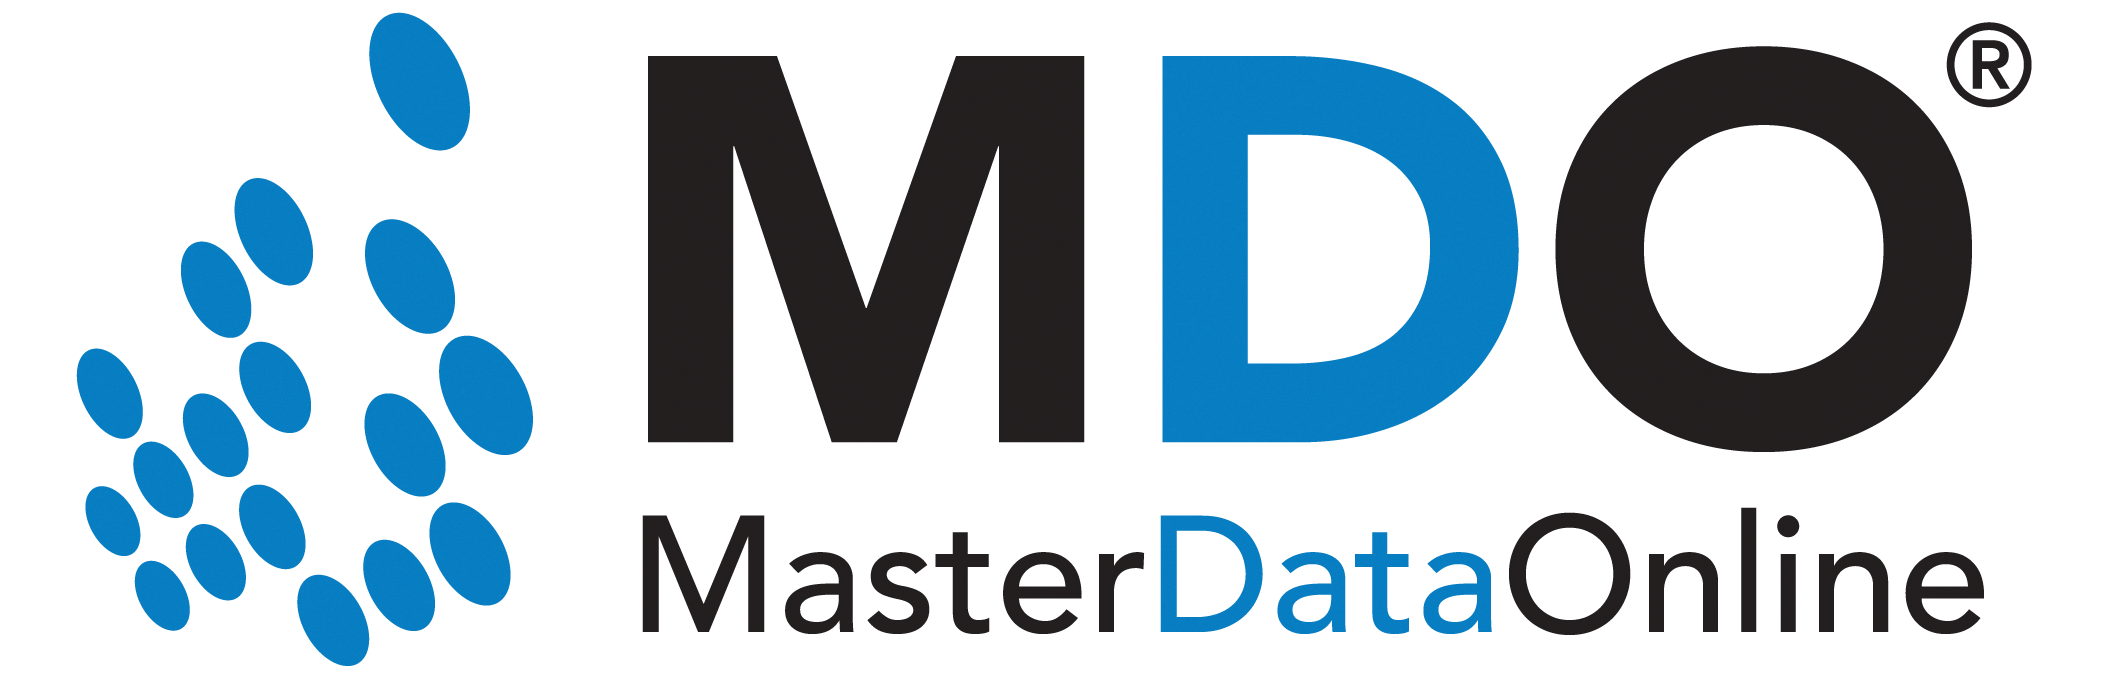 MasterDataOnline (MDO)